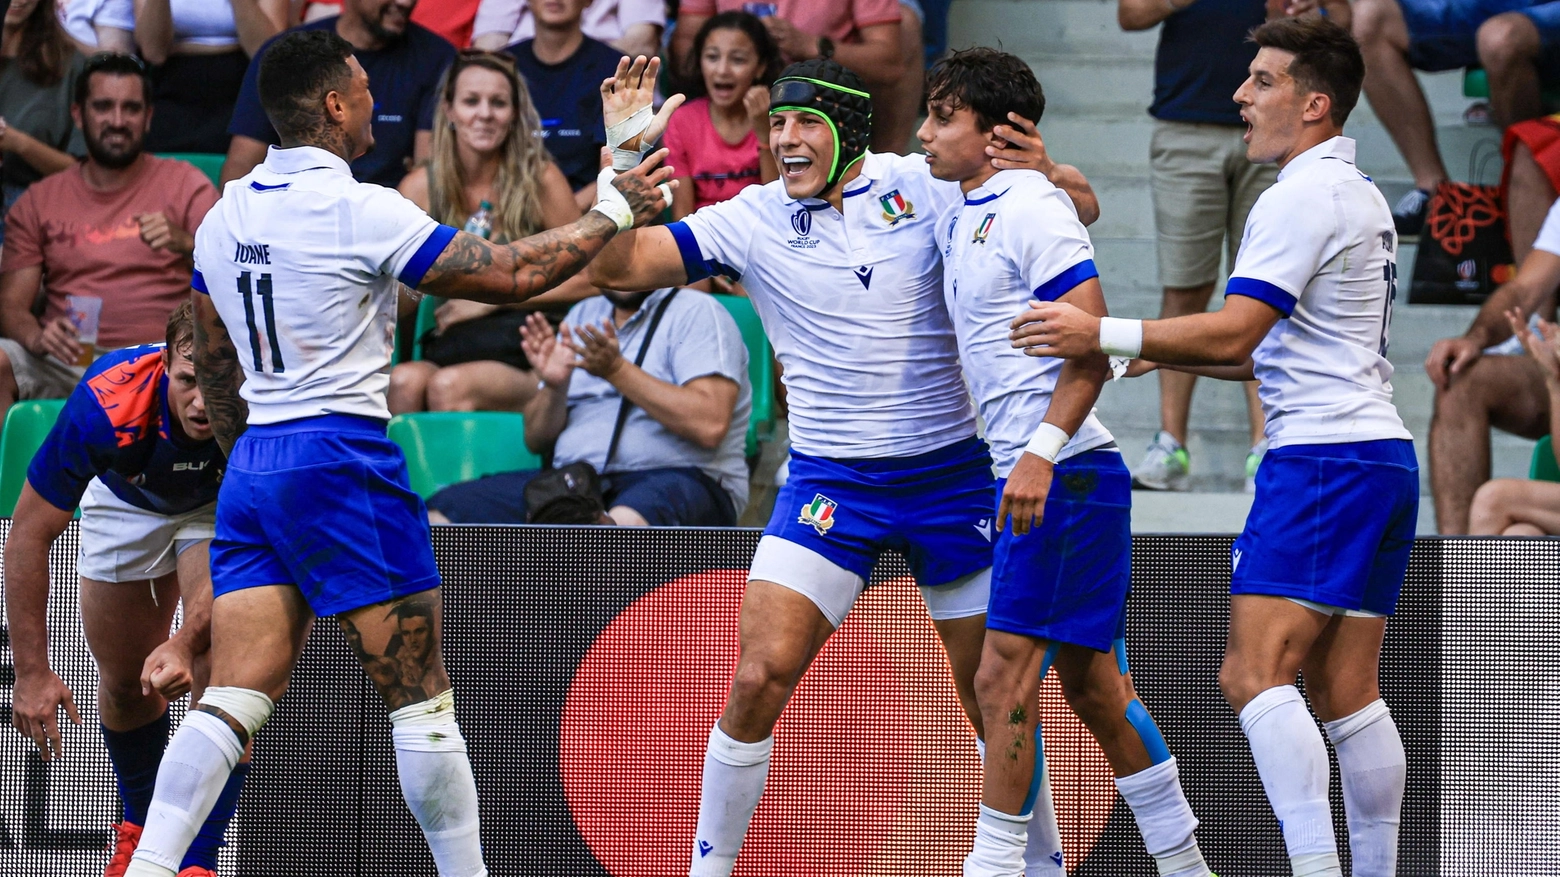 L'esultanza dell'Italia ai Mondiali di rugby (Ansa)